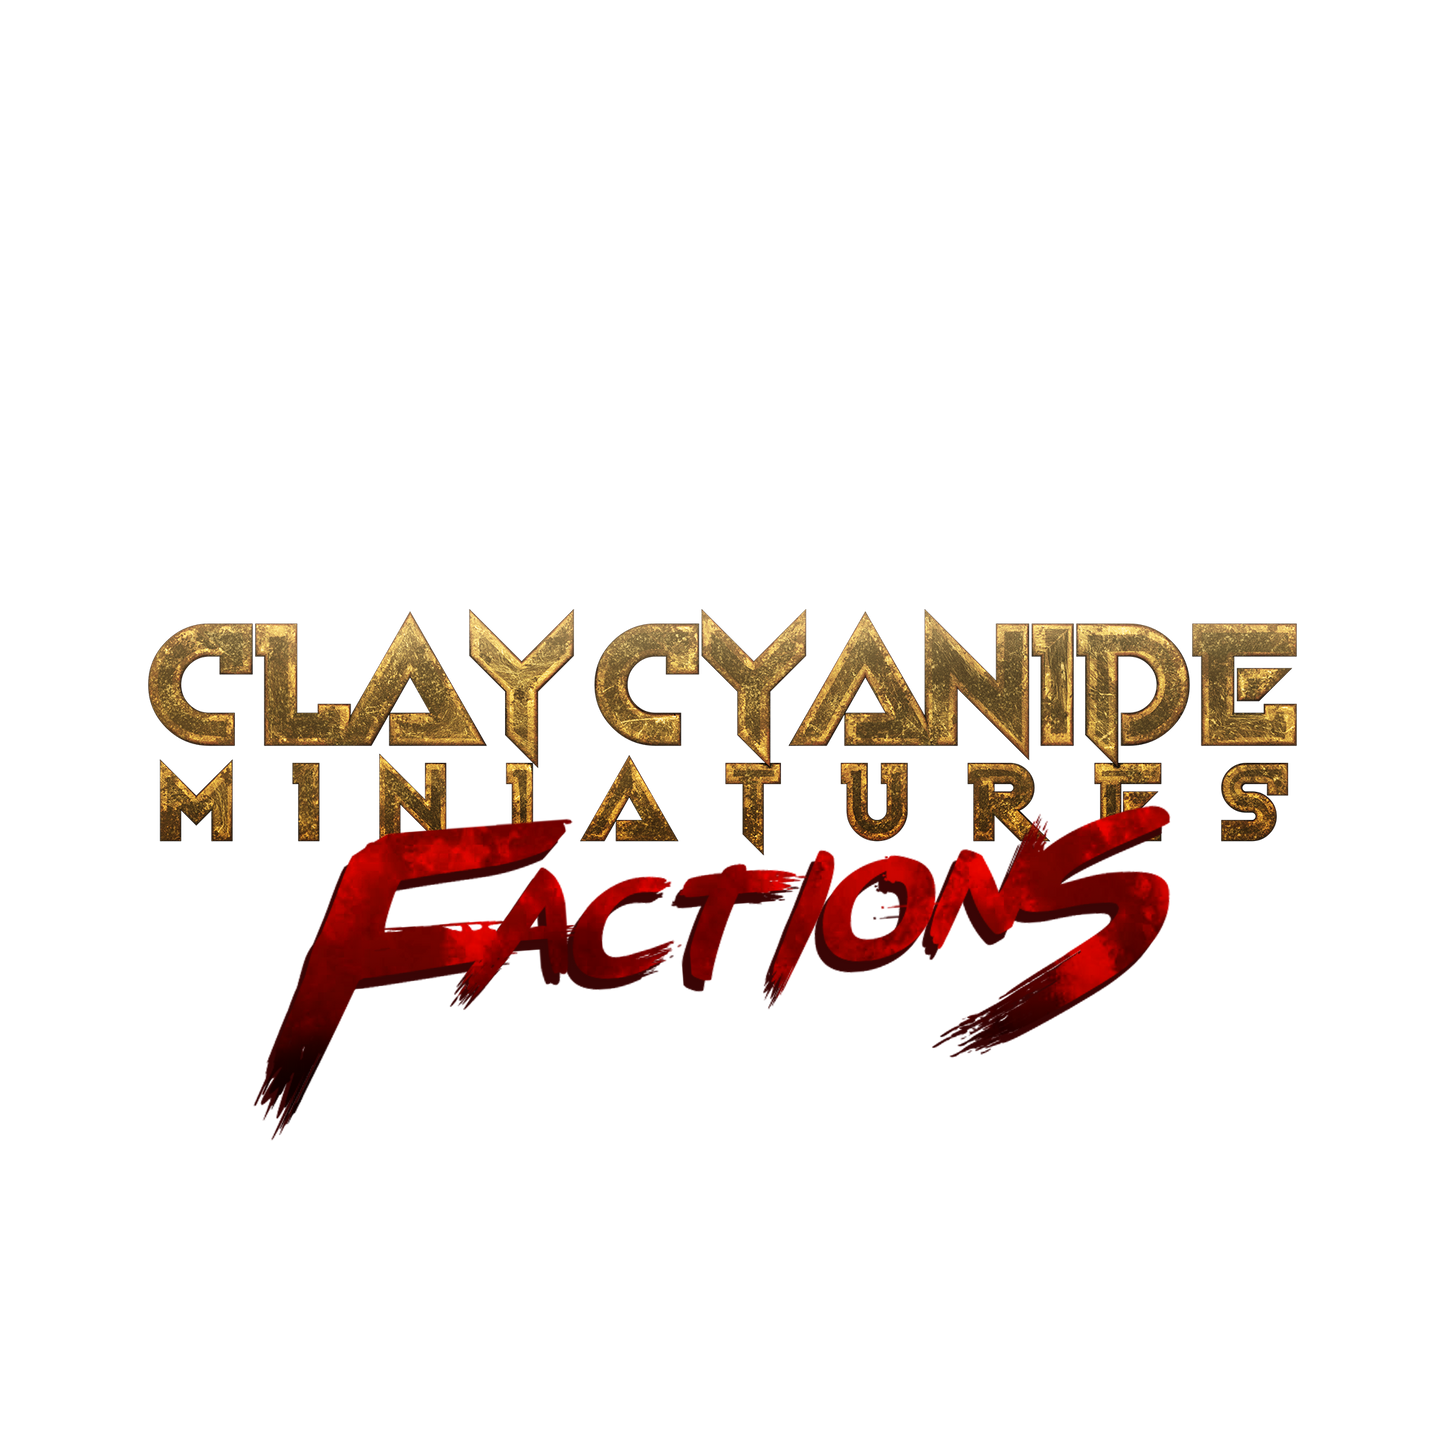 Salbatuta von der Faction der Thorjacks von Clay Cyanide Miniaturen für Brettspiele und RPG